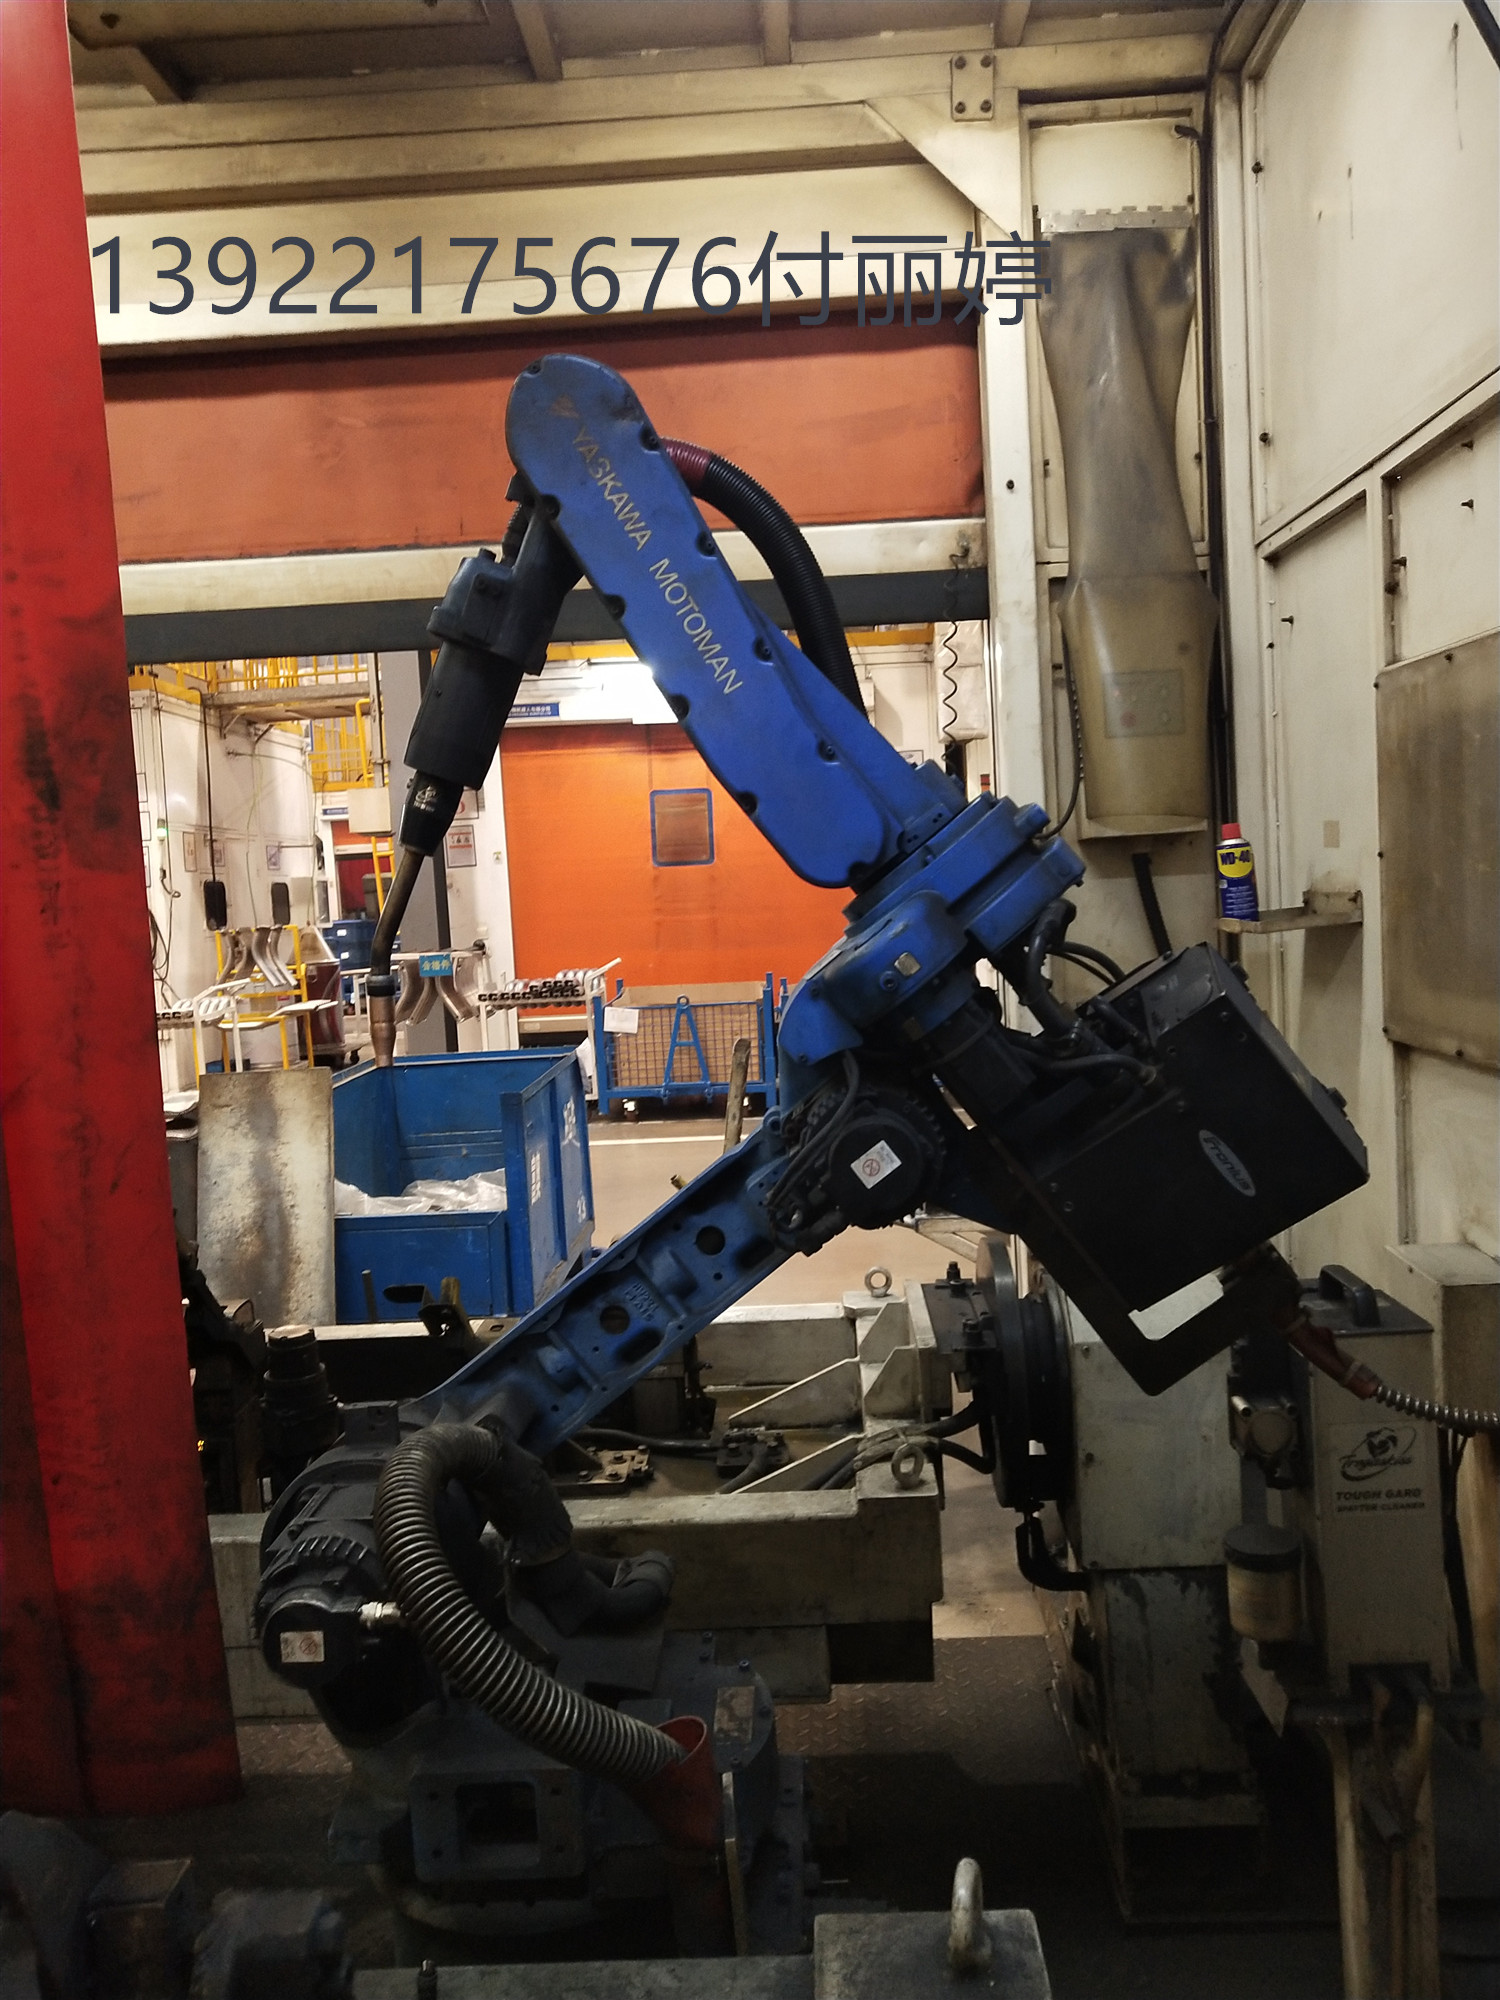 广州安川机器人保养中心 广州安川机器人维修中心